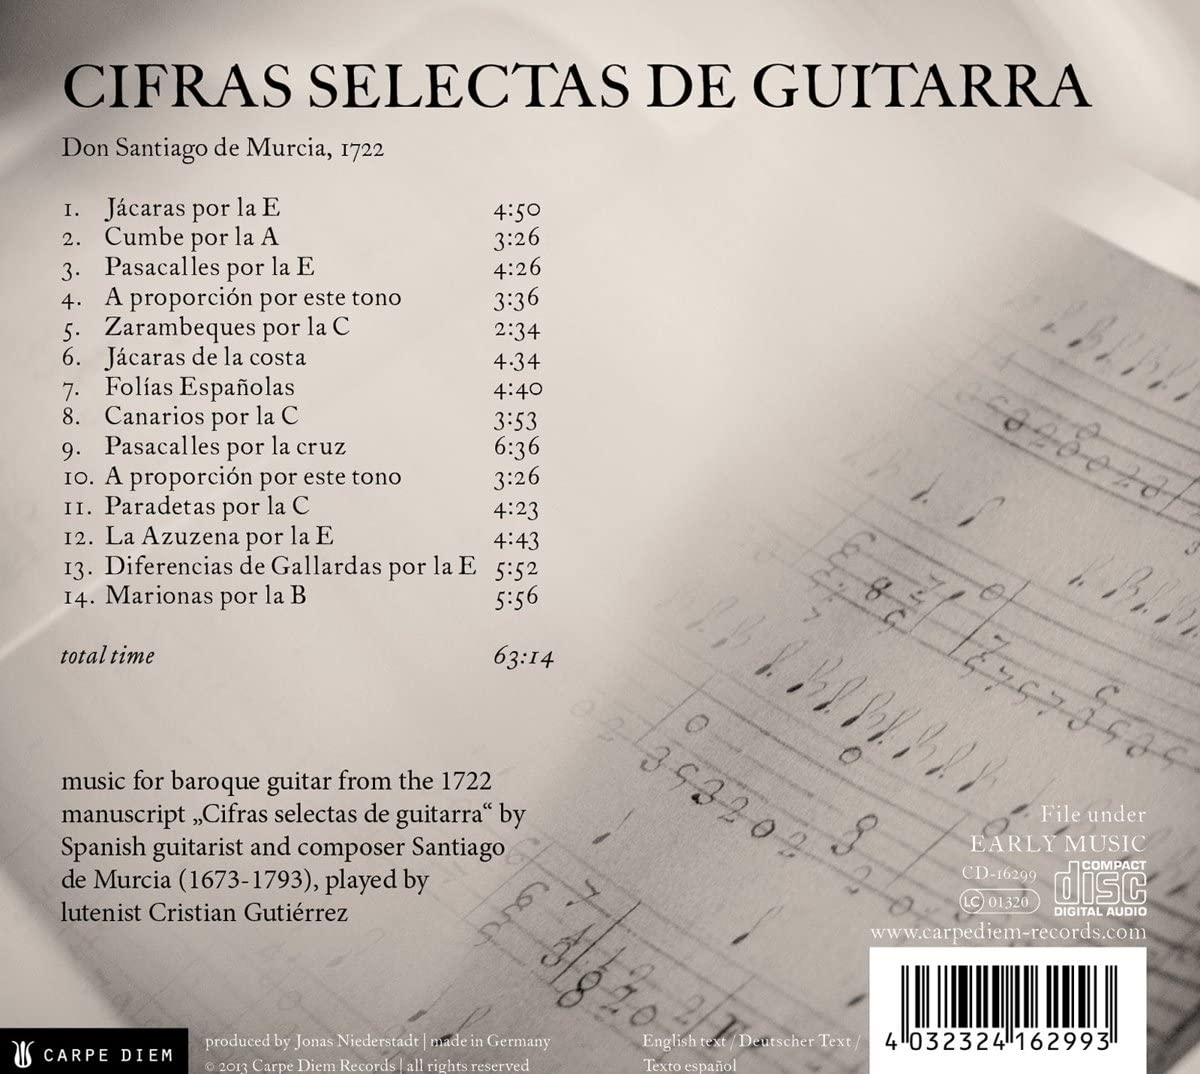 Santiago de Murcia: Cifras Selectas de Guitarra, 1722 - slide-1